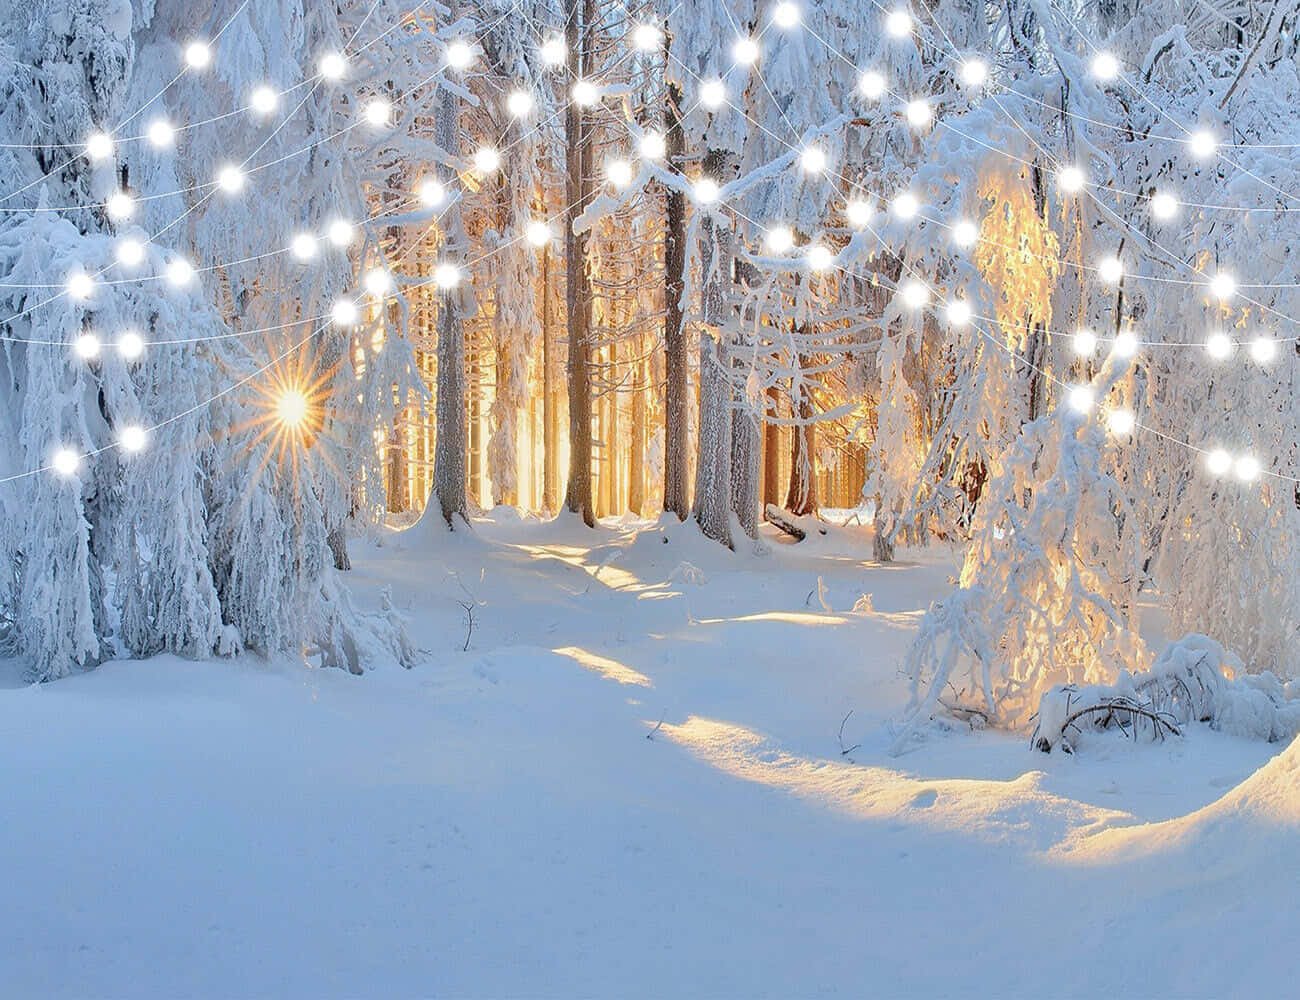 Bosquede Invierno Con Luces De Guirnaldas Fondo De Nieve